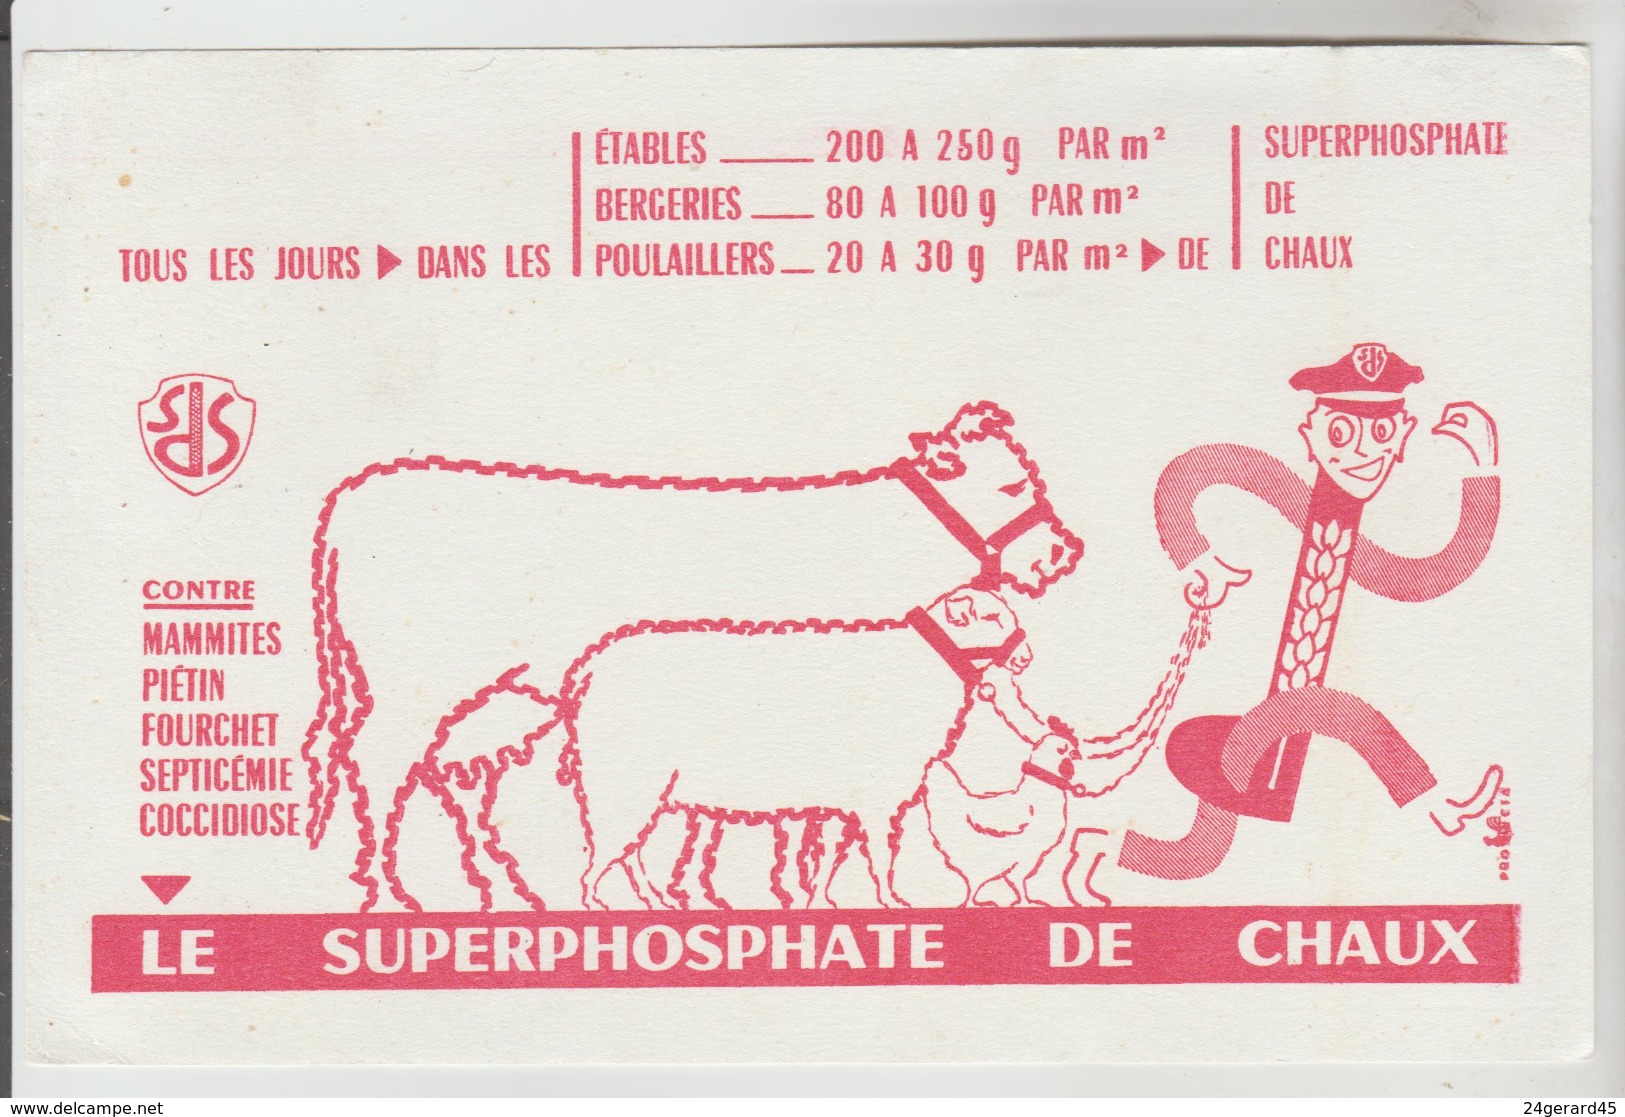 BUVARD AGRICULTURE ENGRAIS - Tous Les Jours Dans Les étables "Le Superphosphate De Chaux" - Farm